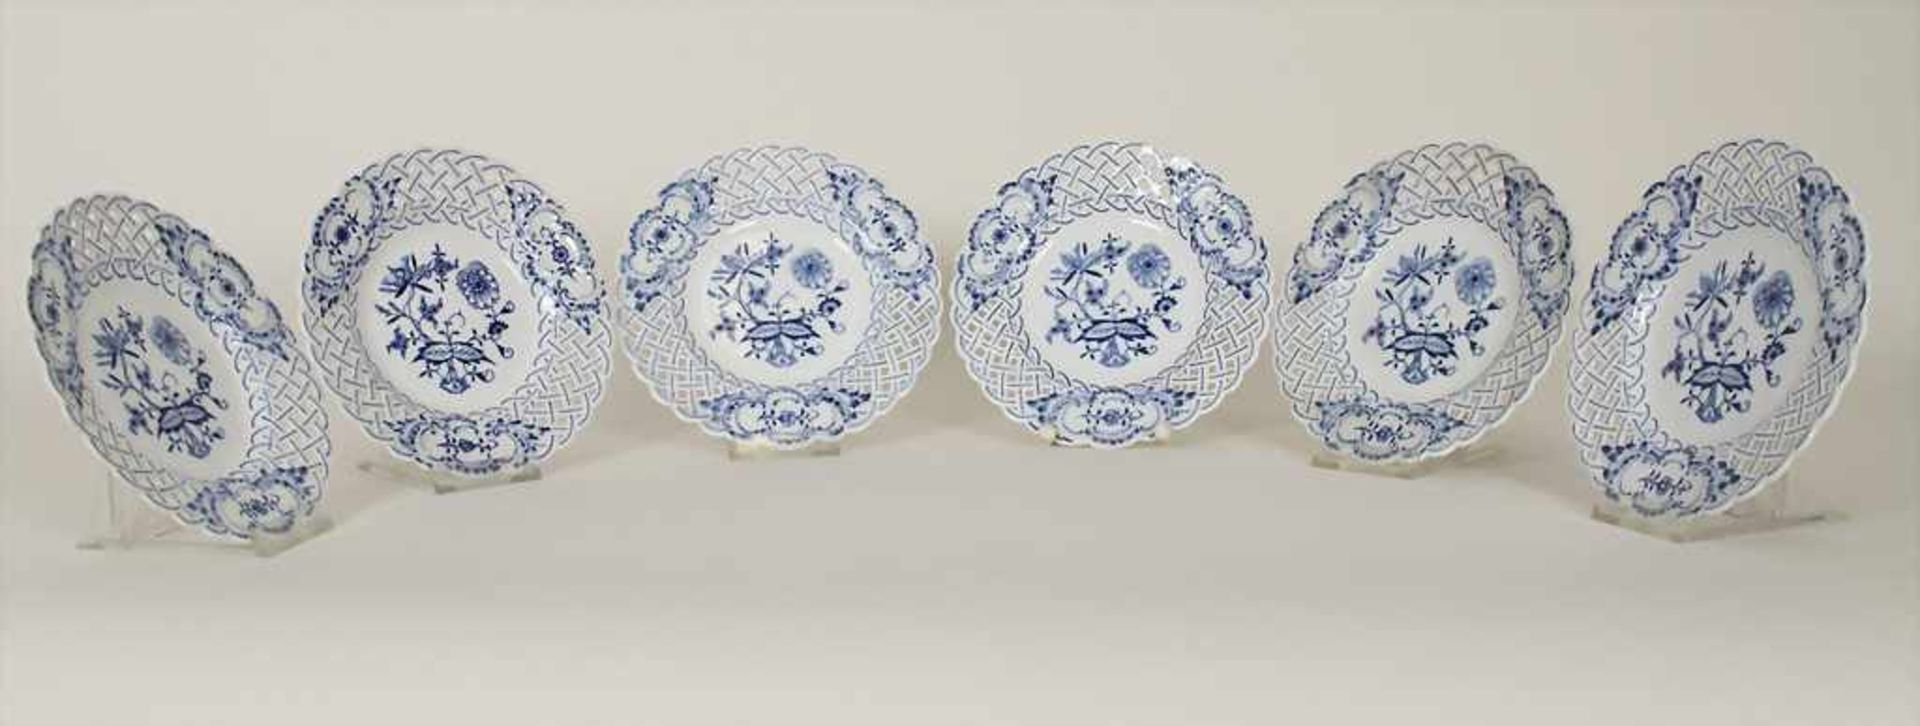 Satz von 6 Korbrandtellern 'Zwiebelmuster' / A set of 6 plates 'Onion Pattern', Meissen, 1. Hälfte